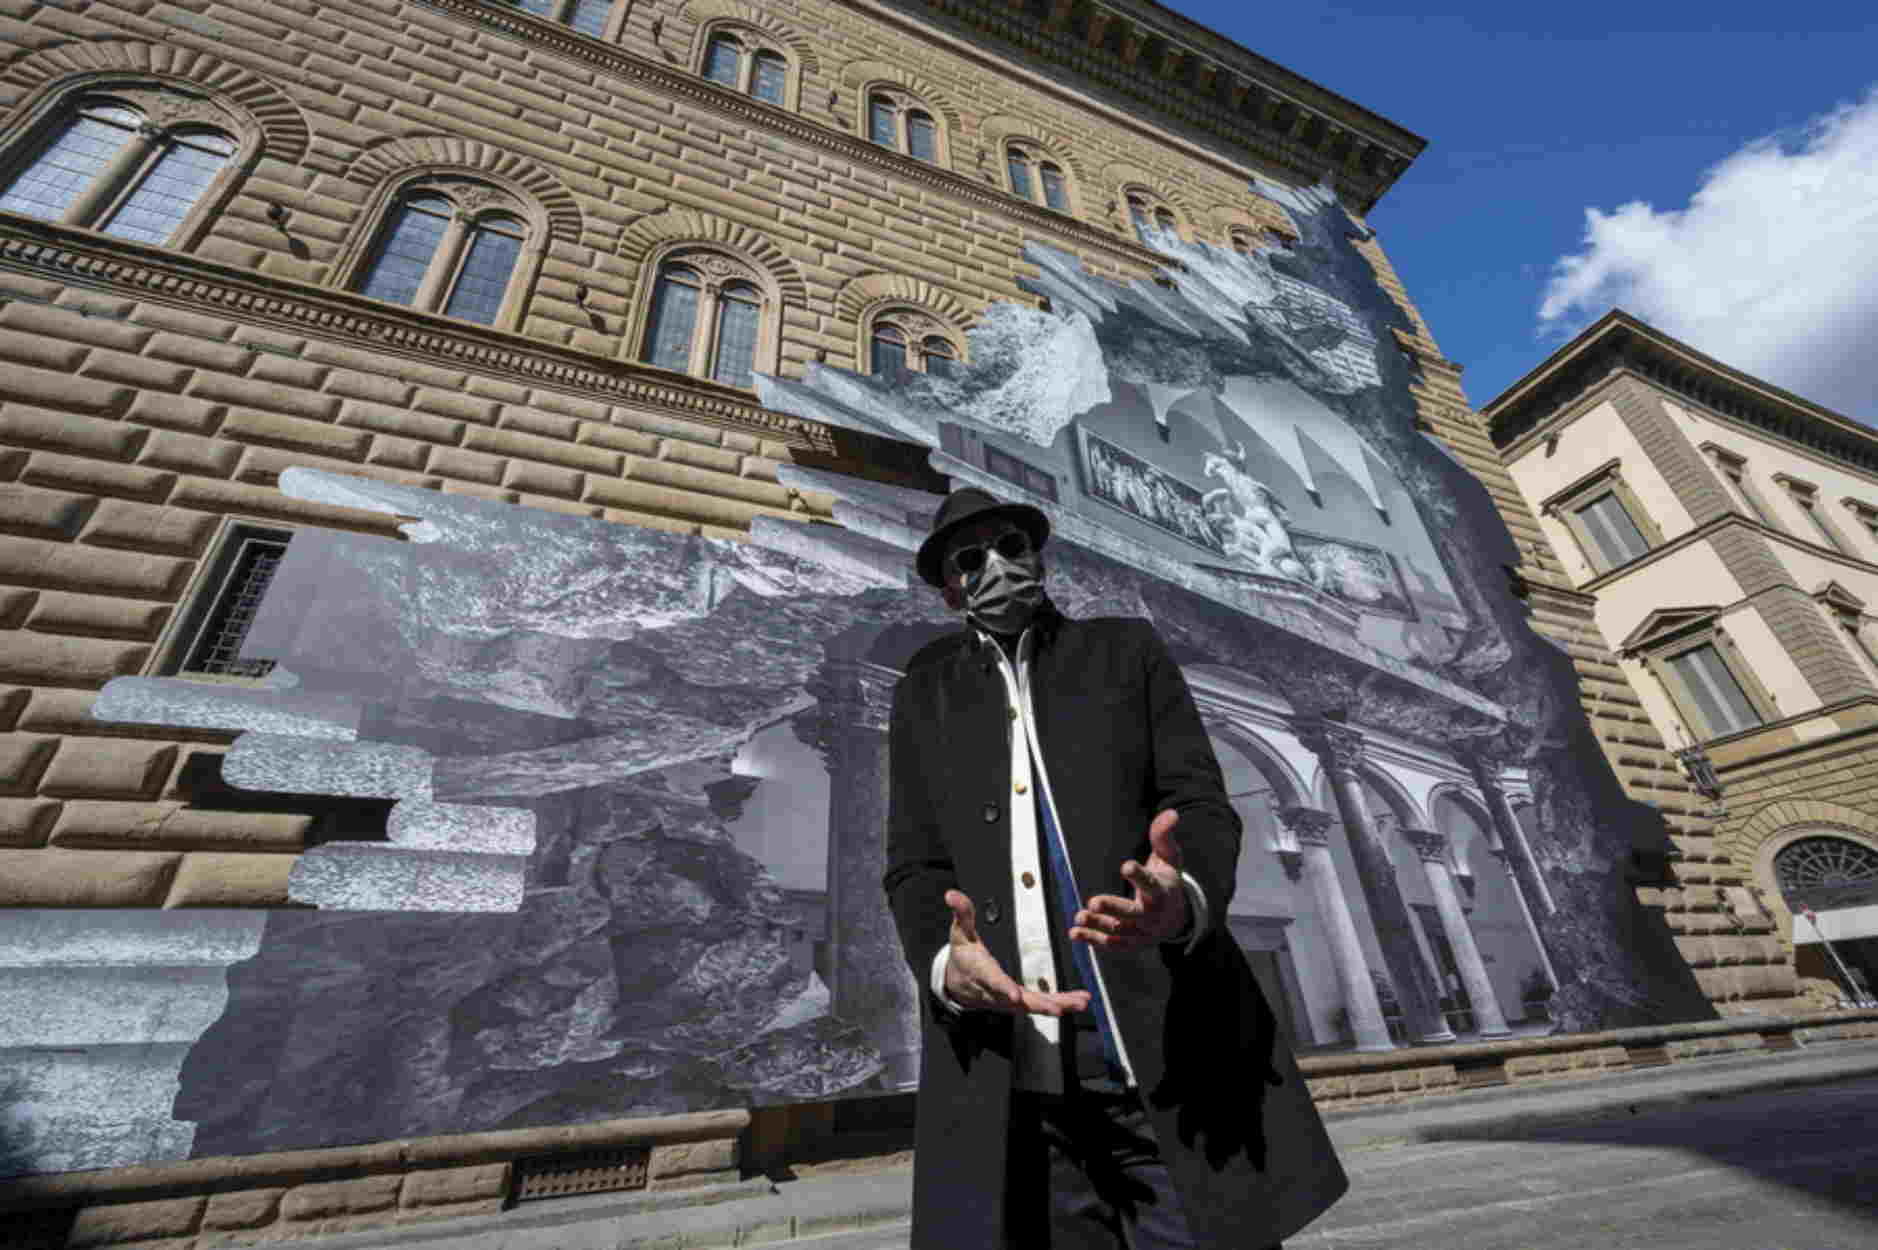 Δείτε τι έκανε ένας καλλιτέχνης στους τοίχους ενός ιστορικού κτιρίου της Φλωρεντίας